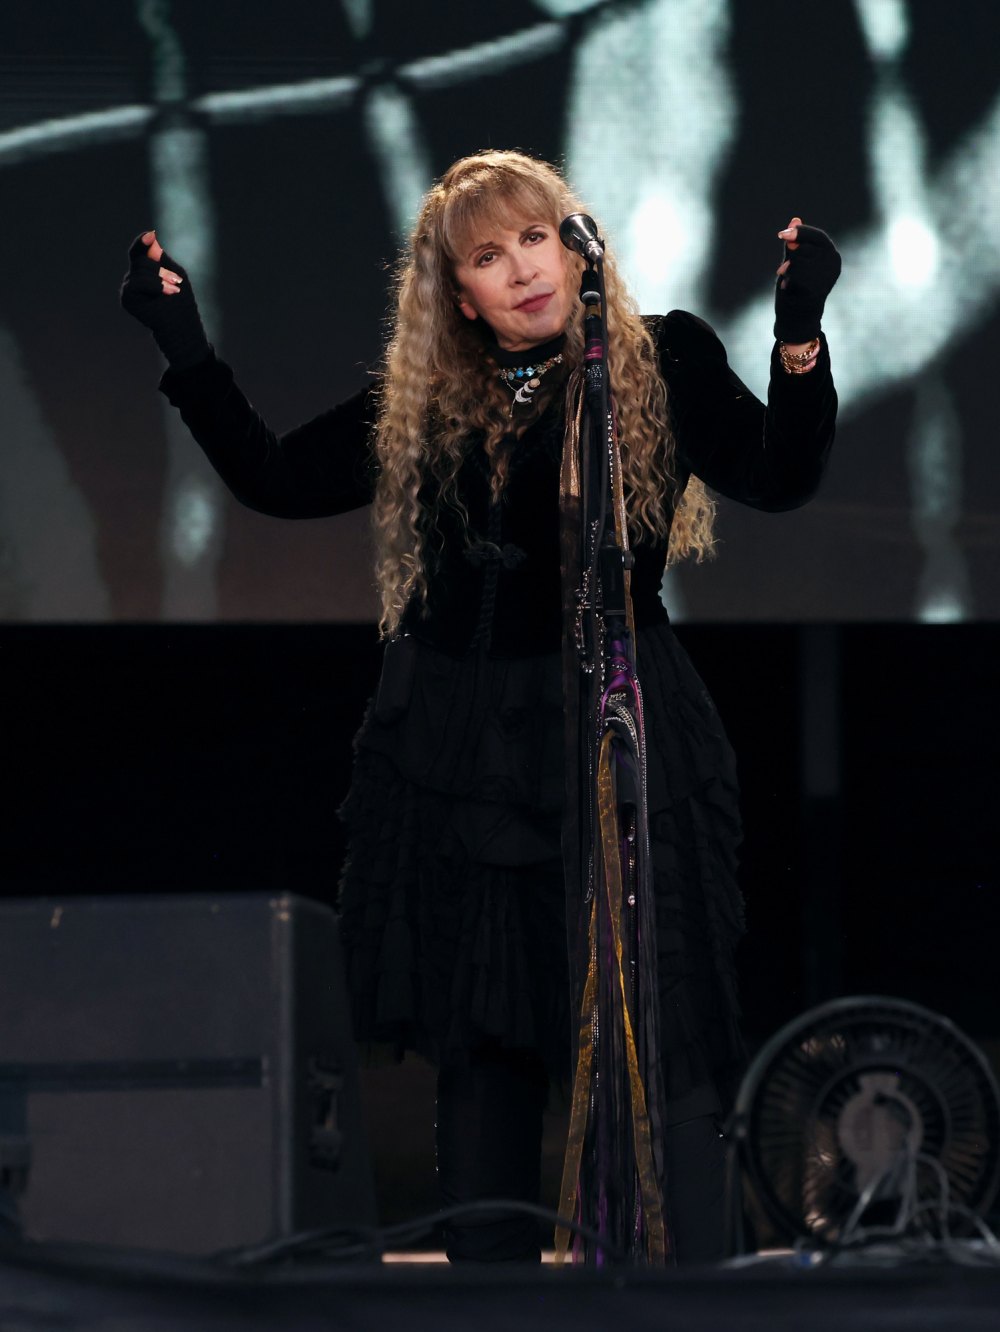 Taylor Swift Fans Notice Stevie Nicks Wearing TTPD Bracelet on Stage